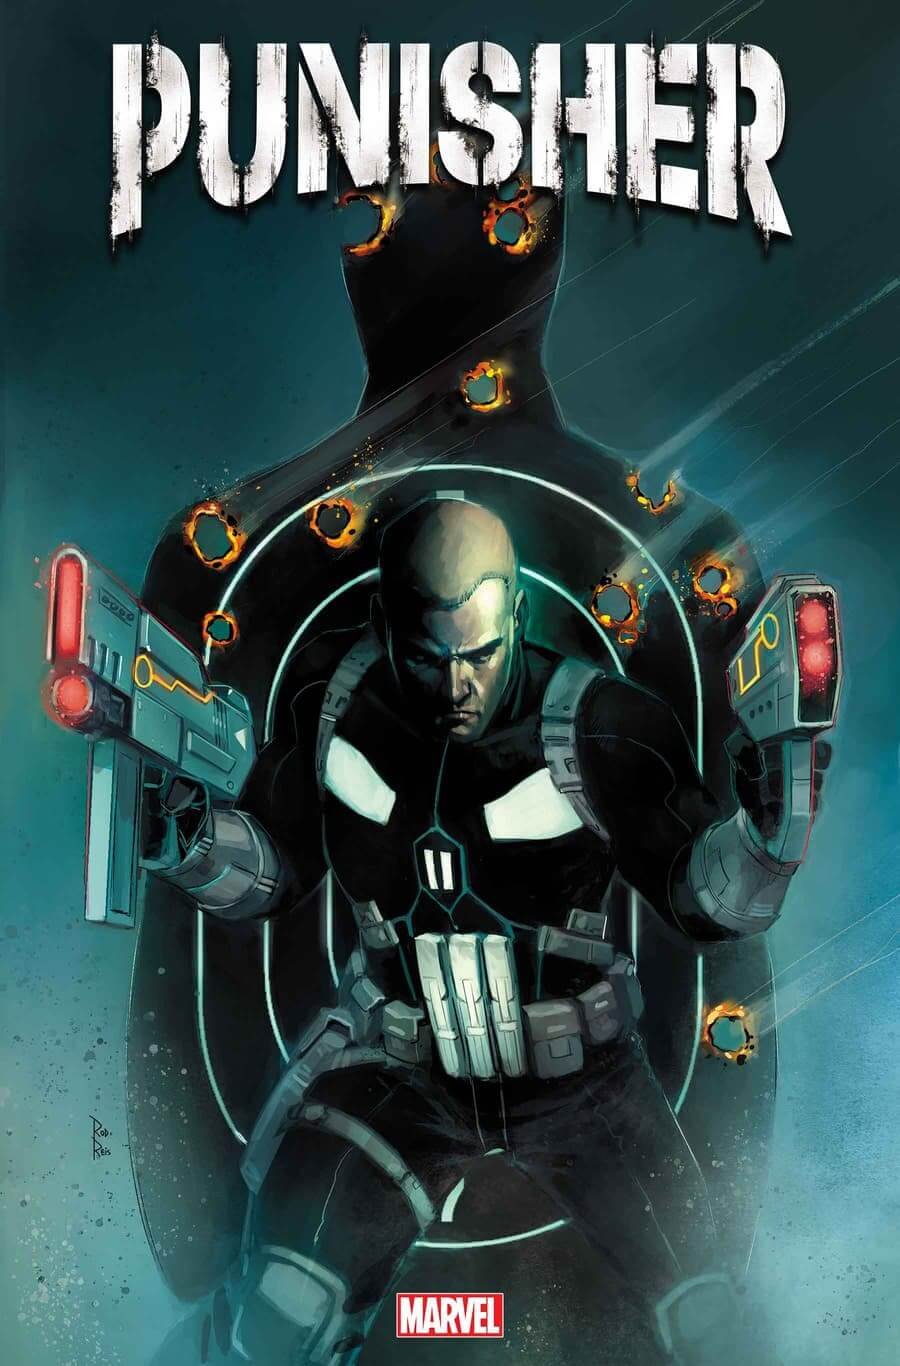 Couverture de Punisher 1 par Rod Reis, avec le nouveau protagoniste Joe Garrison.